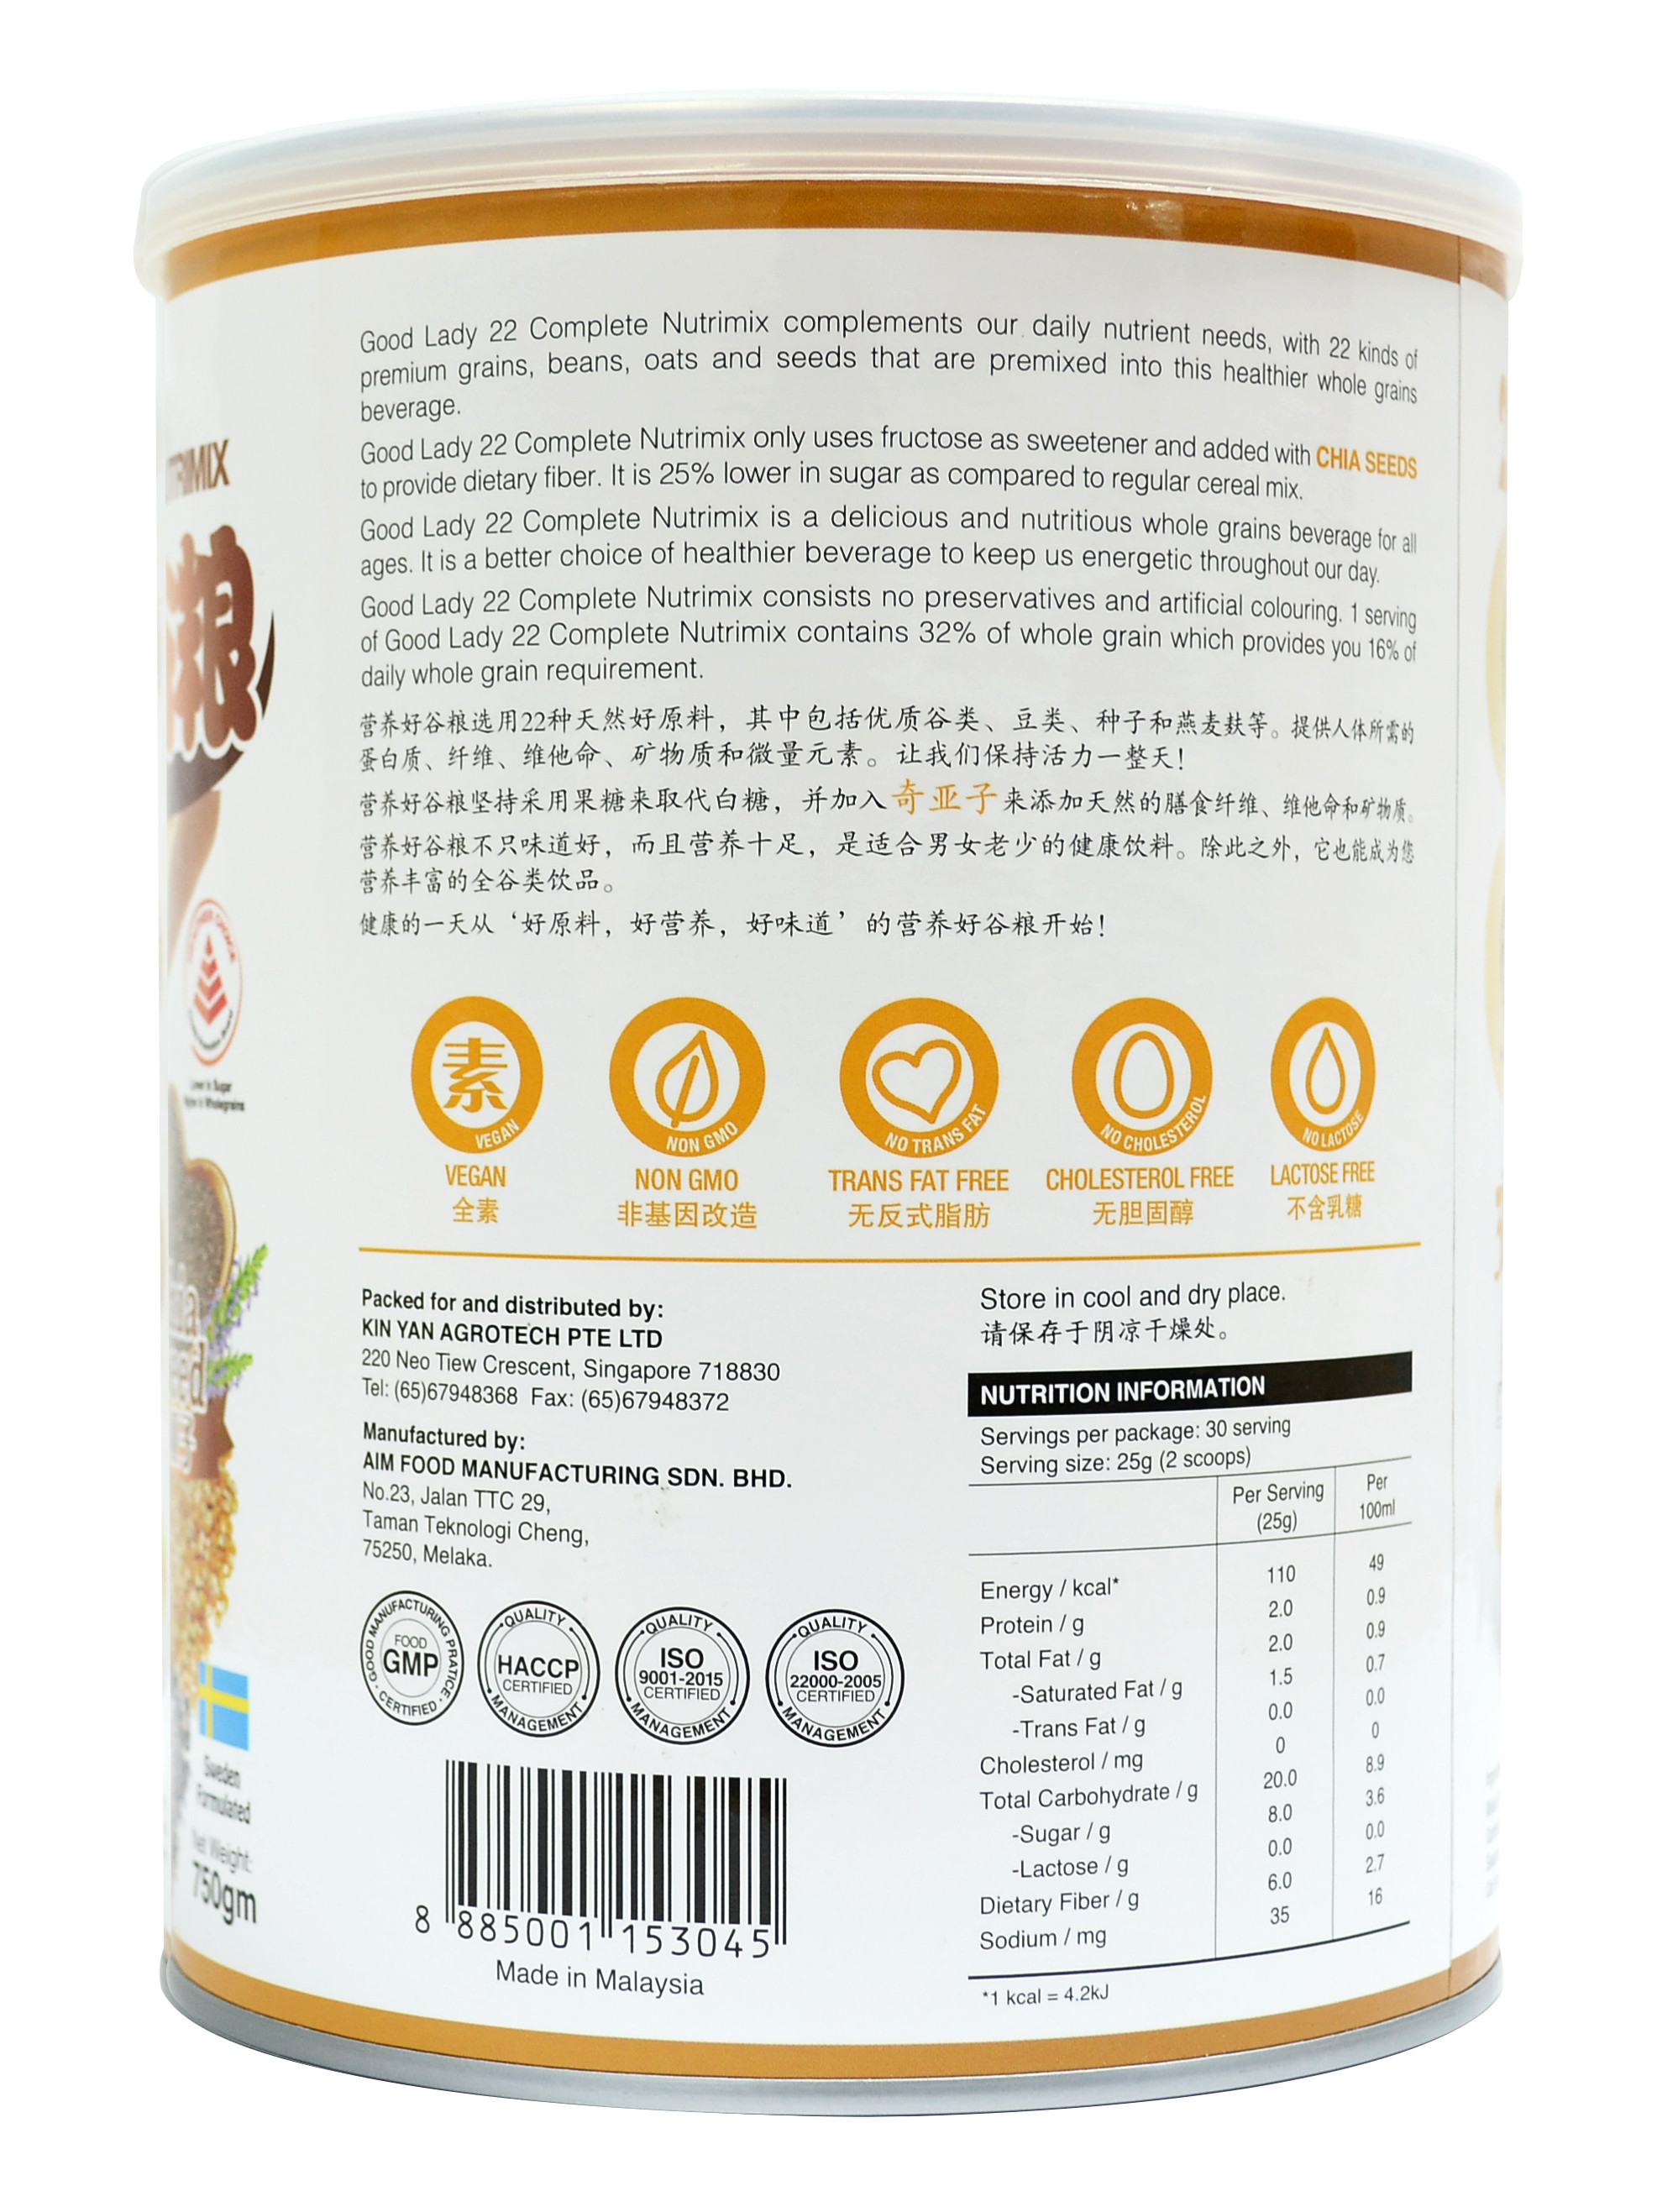 Ngũ cốc (sữa hạt) dinh dưỡng cao cấp 22 loại hạt hiệu Good Lady - 22 Complete Nutrimix - Chia Seed (Hạt chia) - hộp thiếc 750g